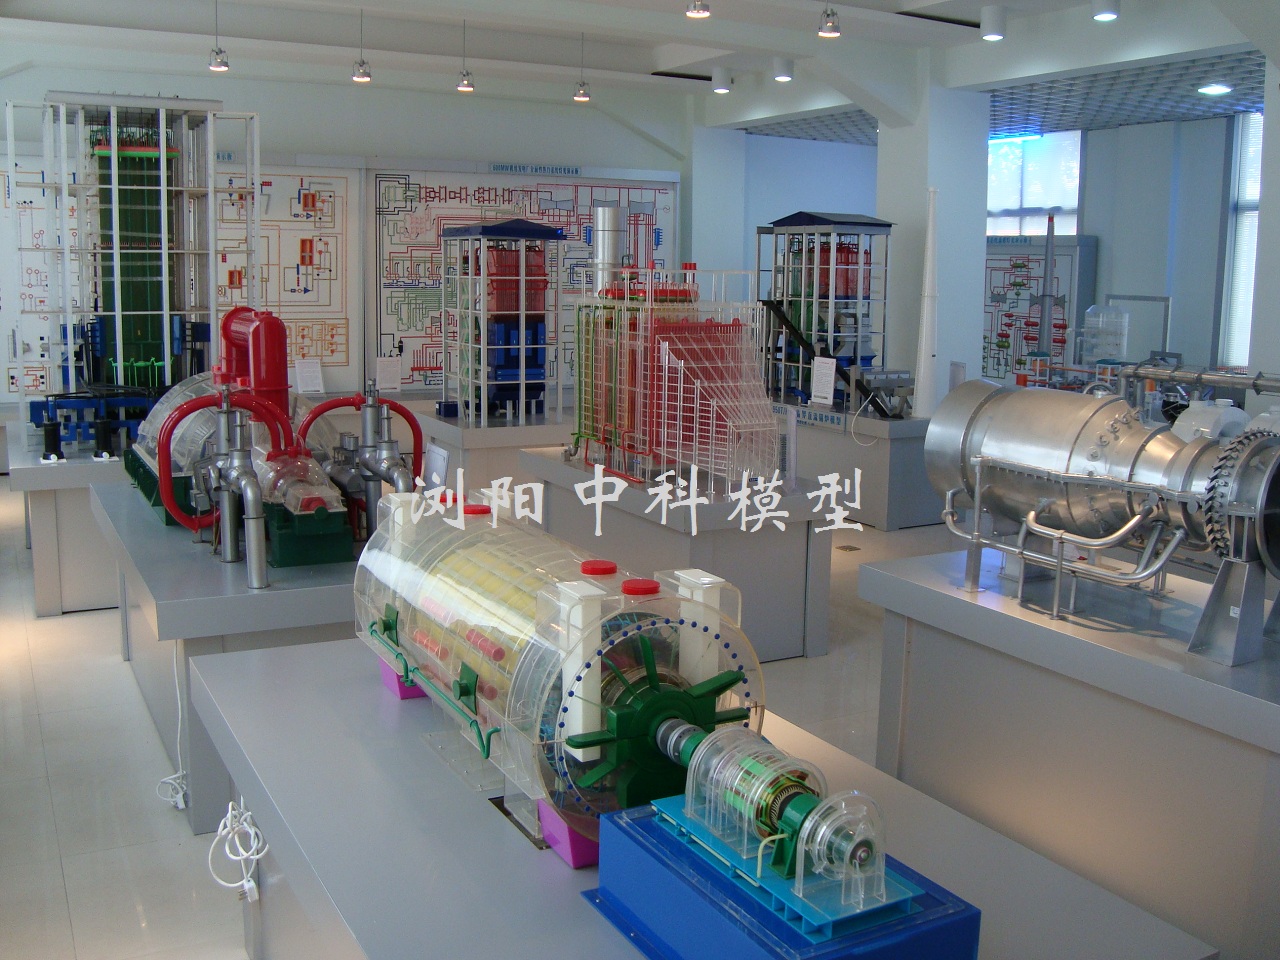 上海電力大學熱能動力實訓室模型